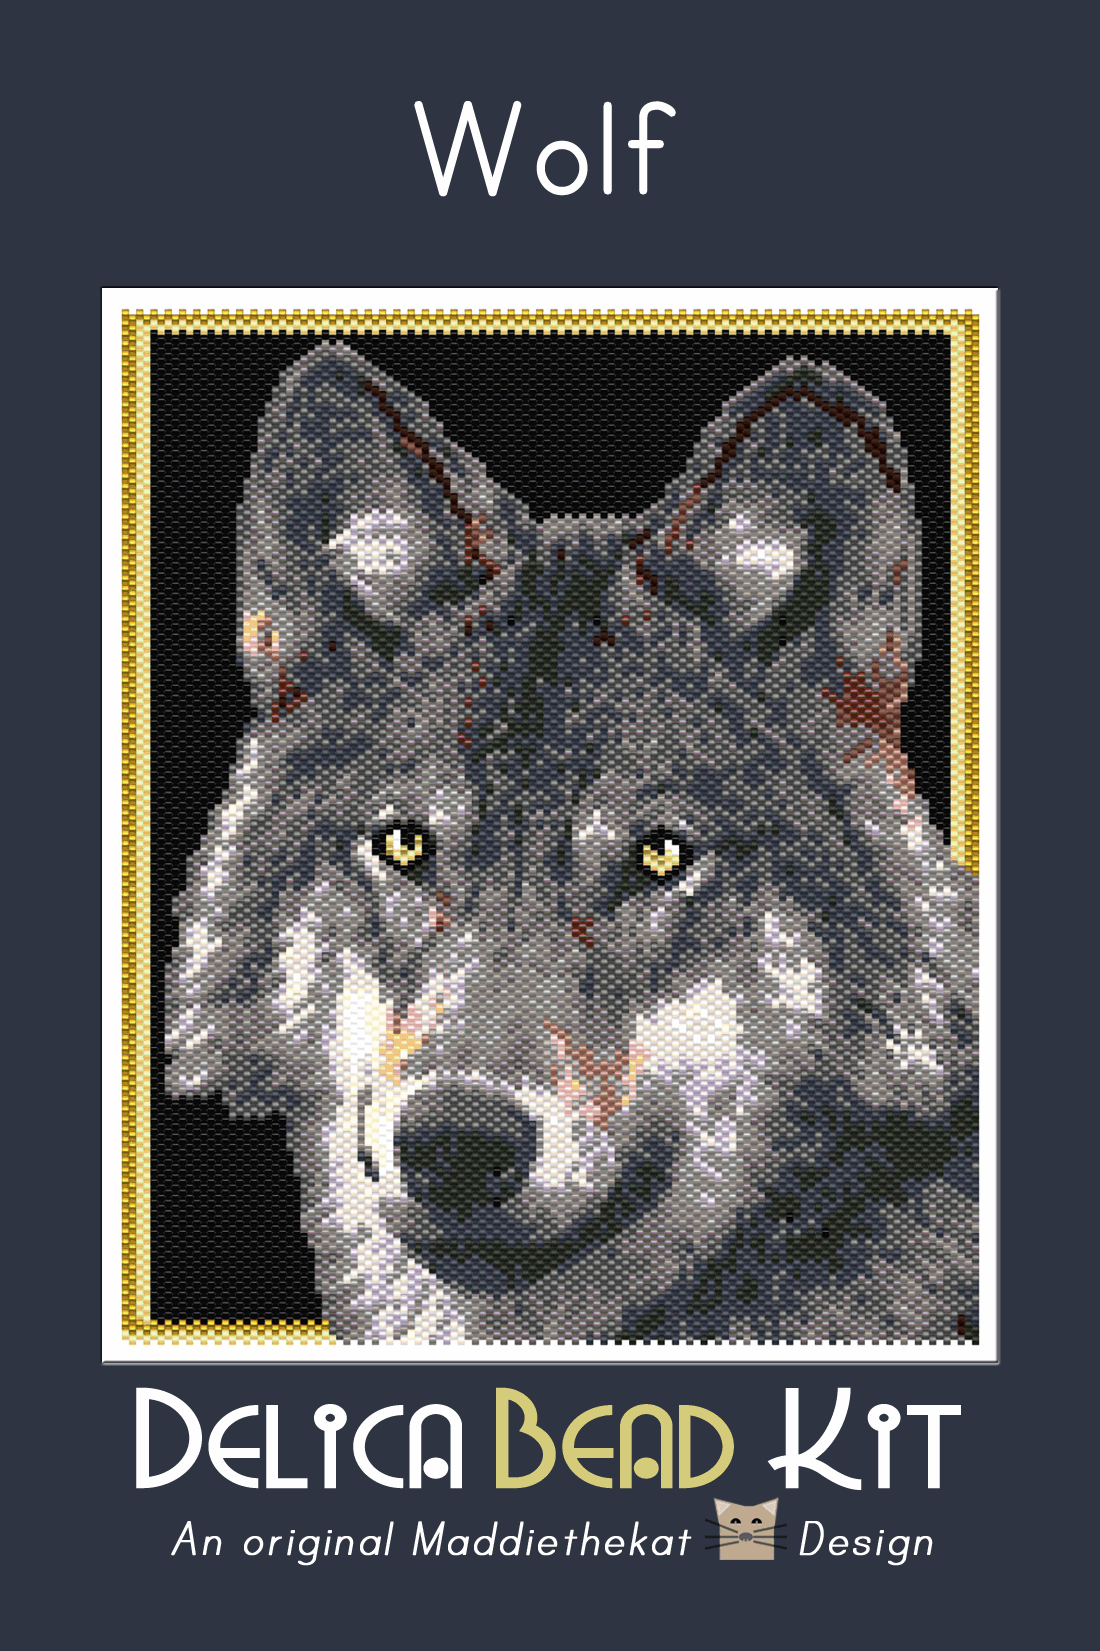 Wolf 01 Larger Peyote Bead Pattern PDF or Bead Kit